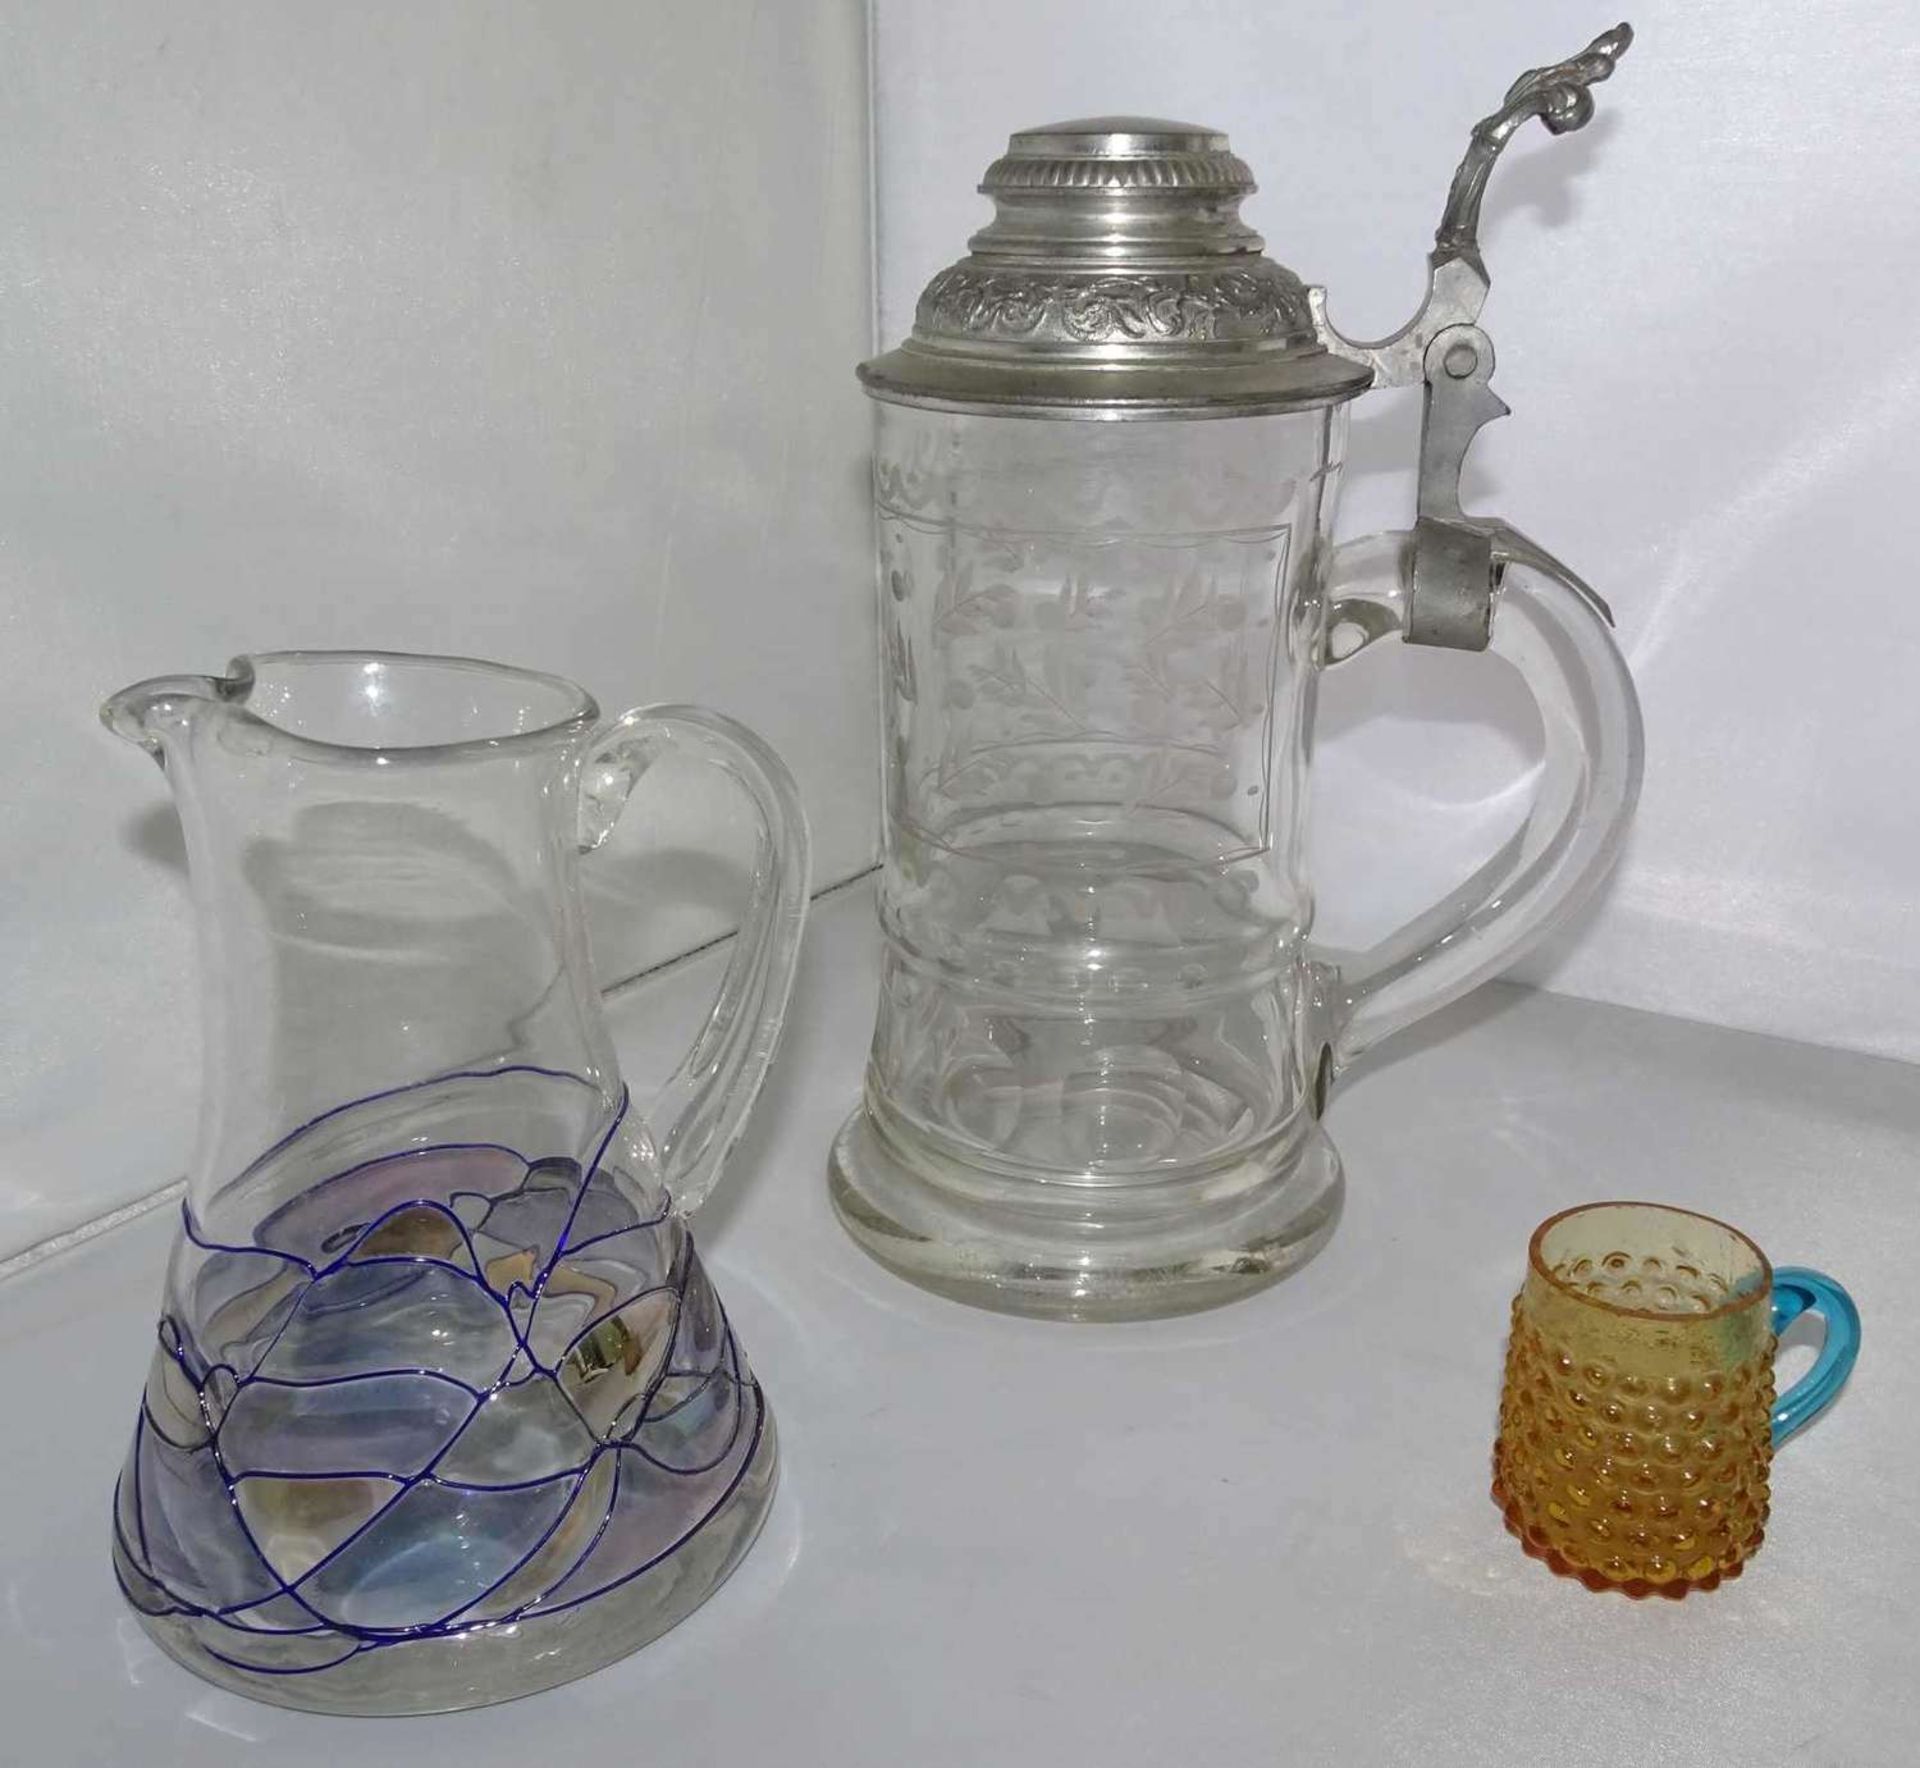 3 Teile älteres Glas, dabei schöner Bierkrug mit feinem Schliff, 1 Krug mit Aufschmelzungen, sowie